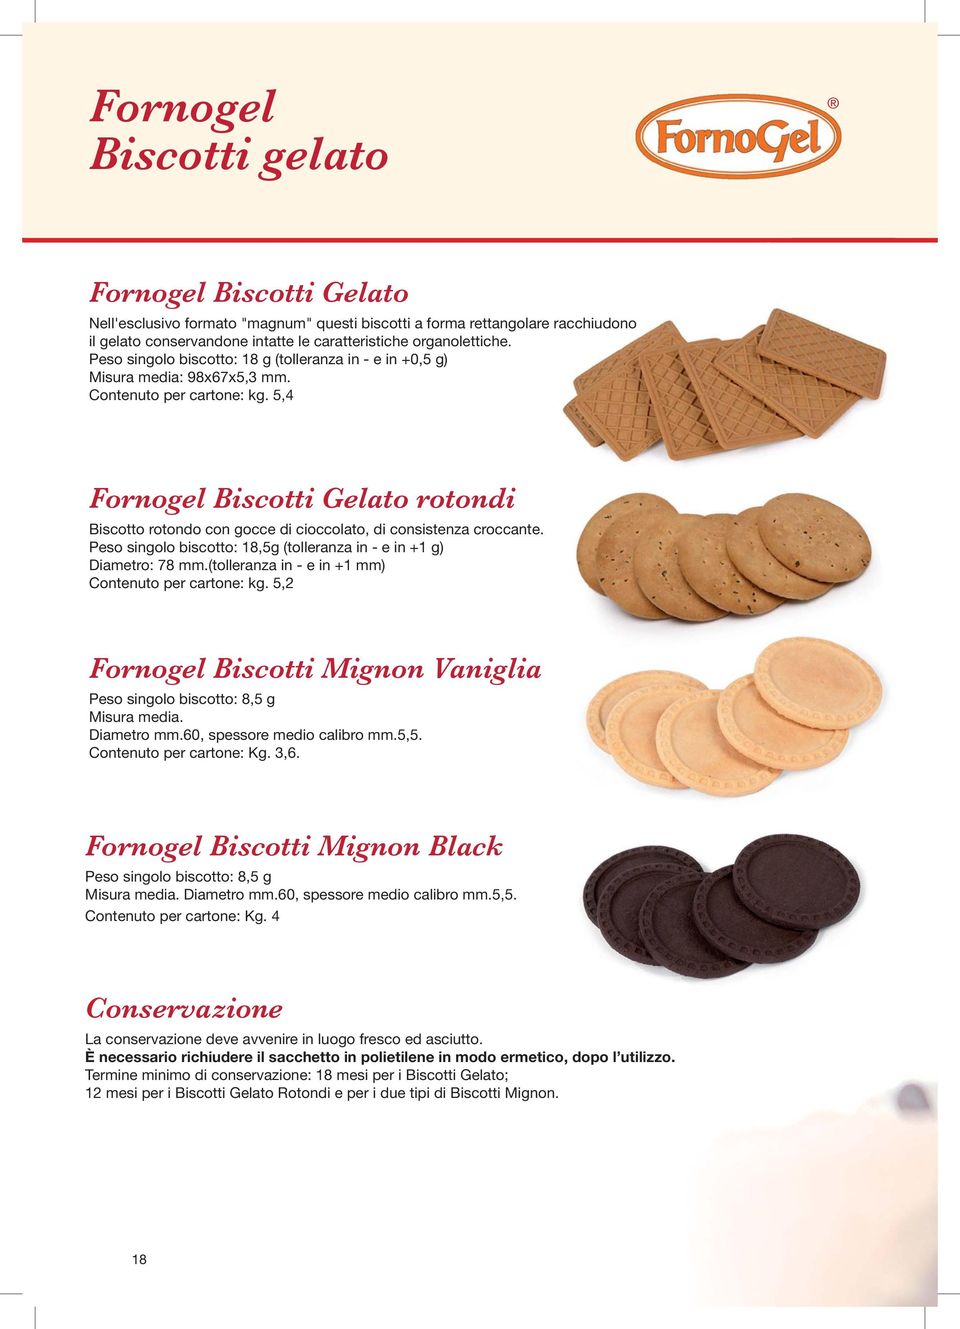 5,4 Fornogel Biscotti Gelato rotondi Biscotto rotondo con gocce di cioccolato, di consistenza croccante. Peso singolo biscotto: 18,5g (tolleranza in - e in +1 g) Diametro: 78 mm.